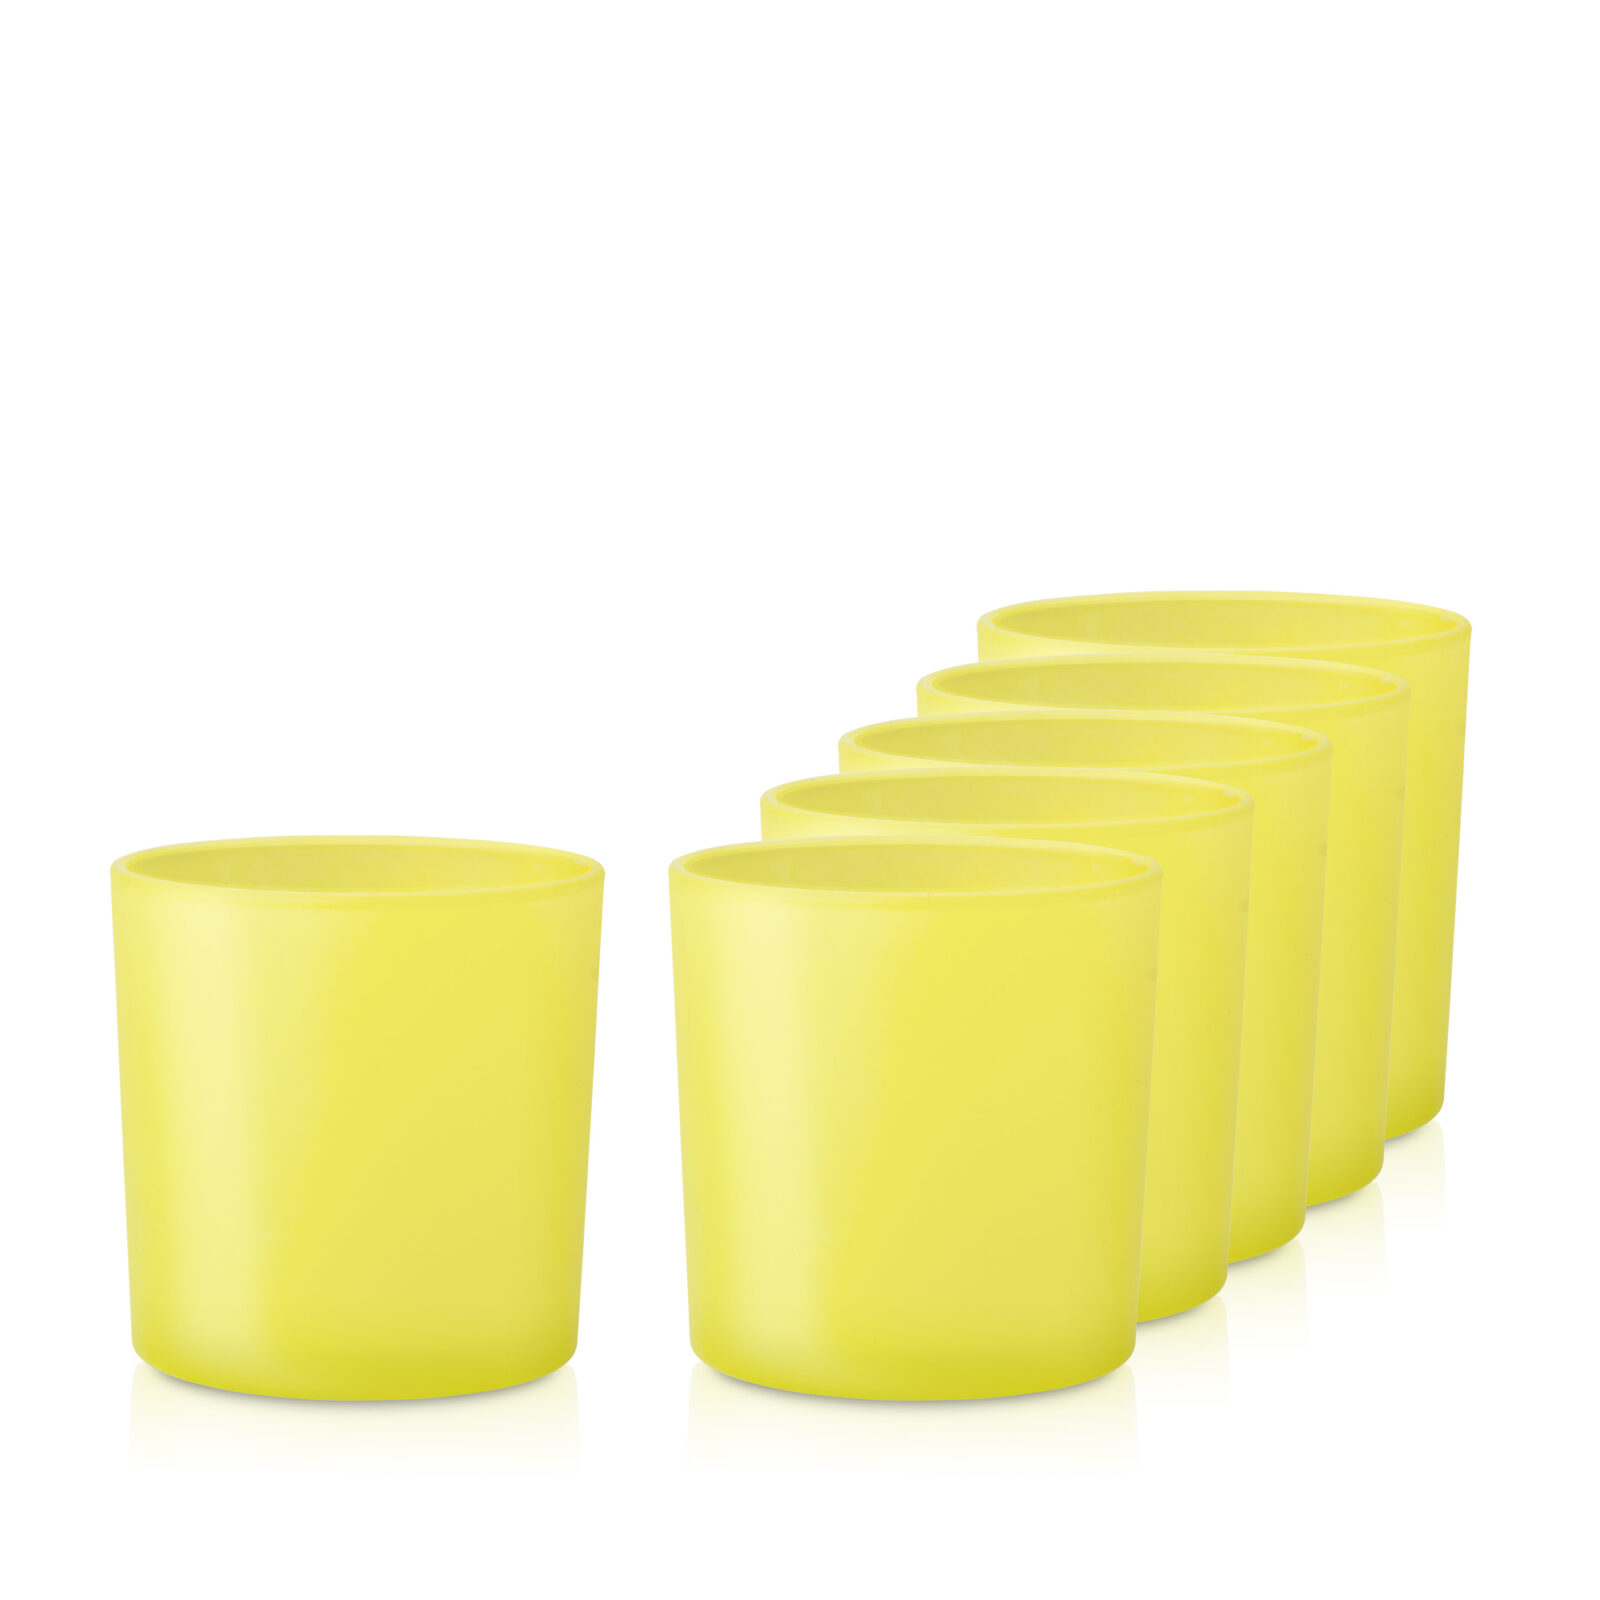 Pojemnik szklany żółty mały wiosenny do zalewu świec 38006 kpl. 6 szt.